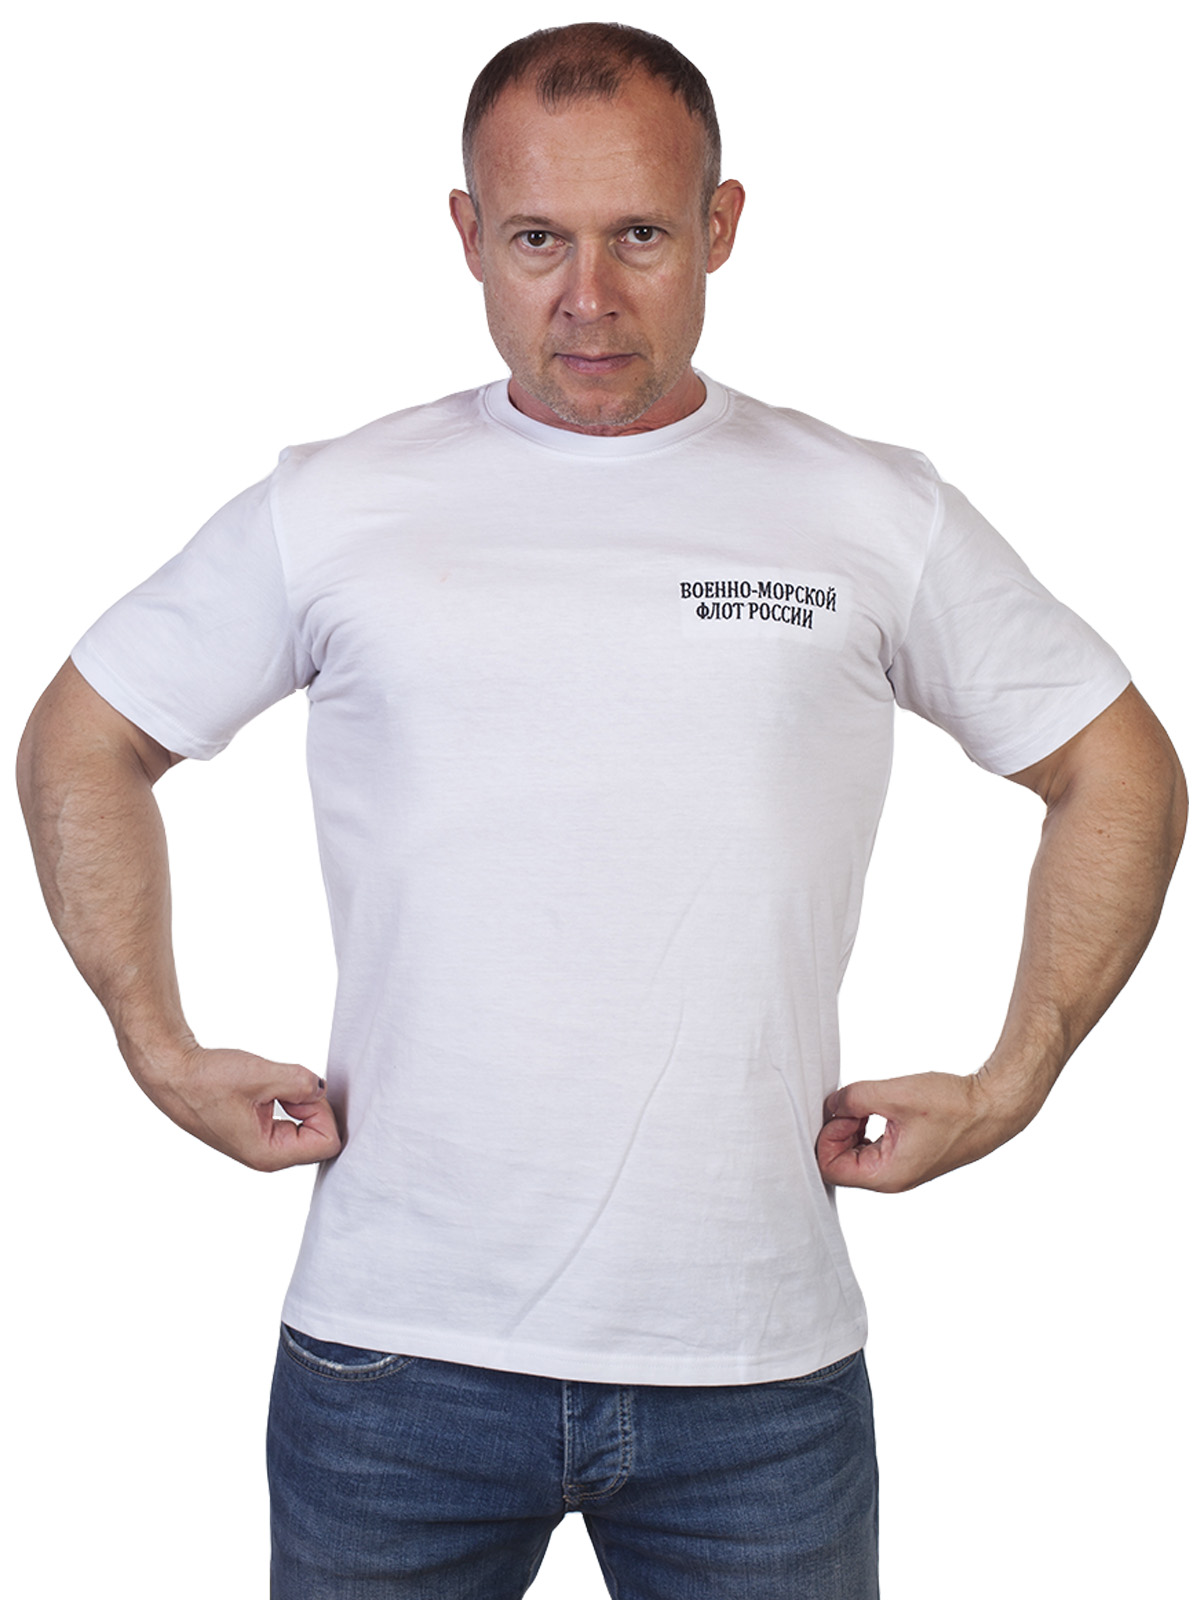 Белая футболка с вышивкой "Военно-морской флот России" 